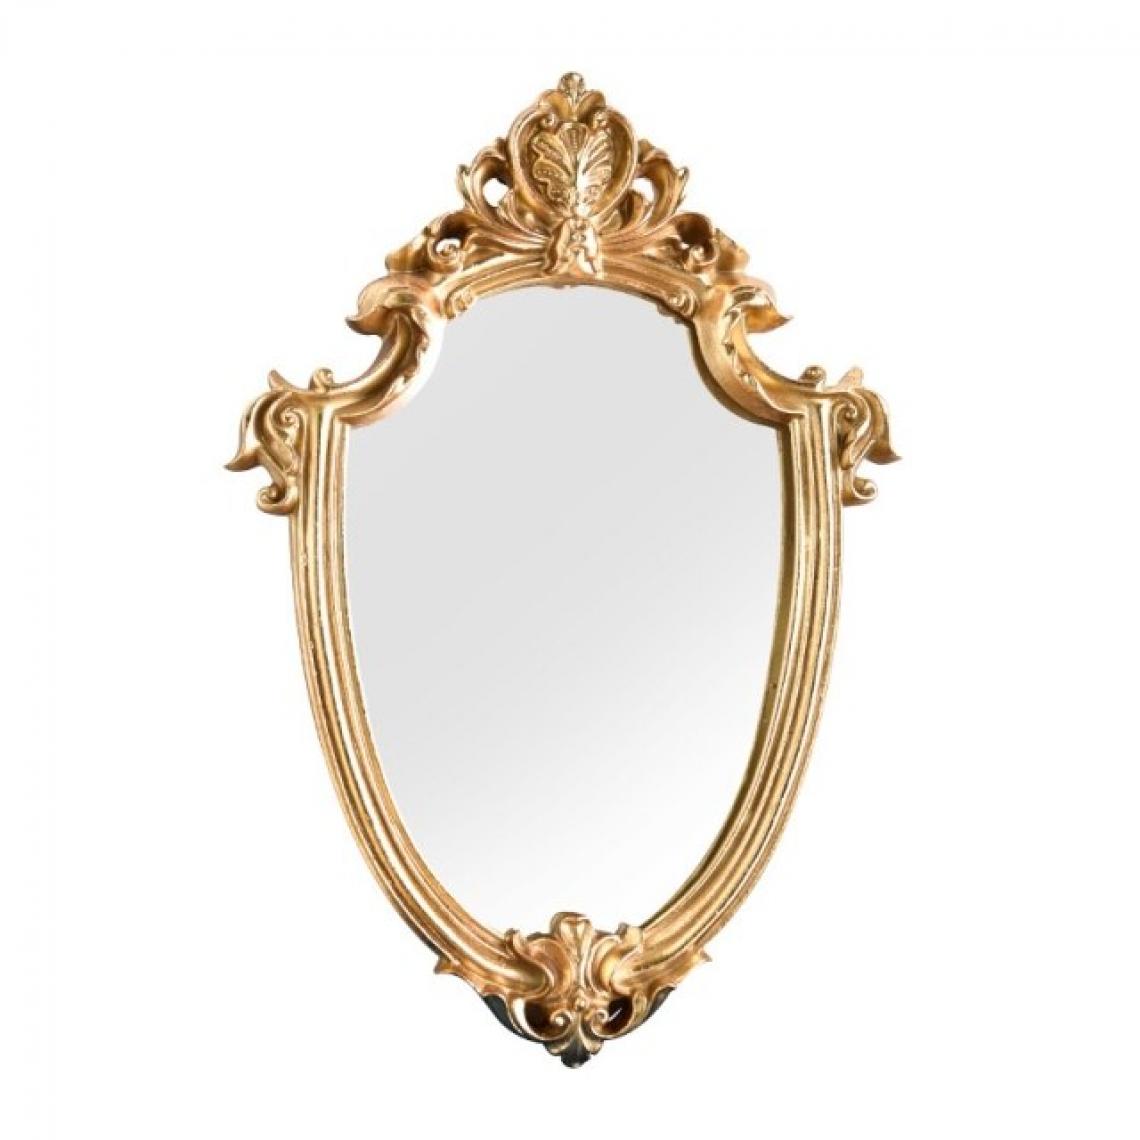 Universal - 1pic miroir décoratif en résine en relief miroir mural rétro décoration de salle de bains miroir de maquillage en forme de bouclier d'or décoration de la maison | miroir de bain(Or) - Miroir de salle de bain